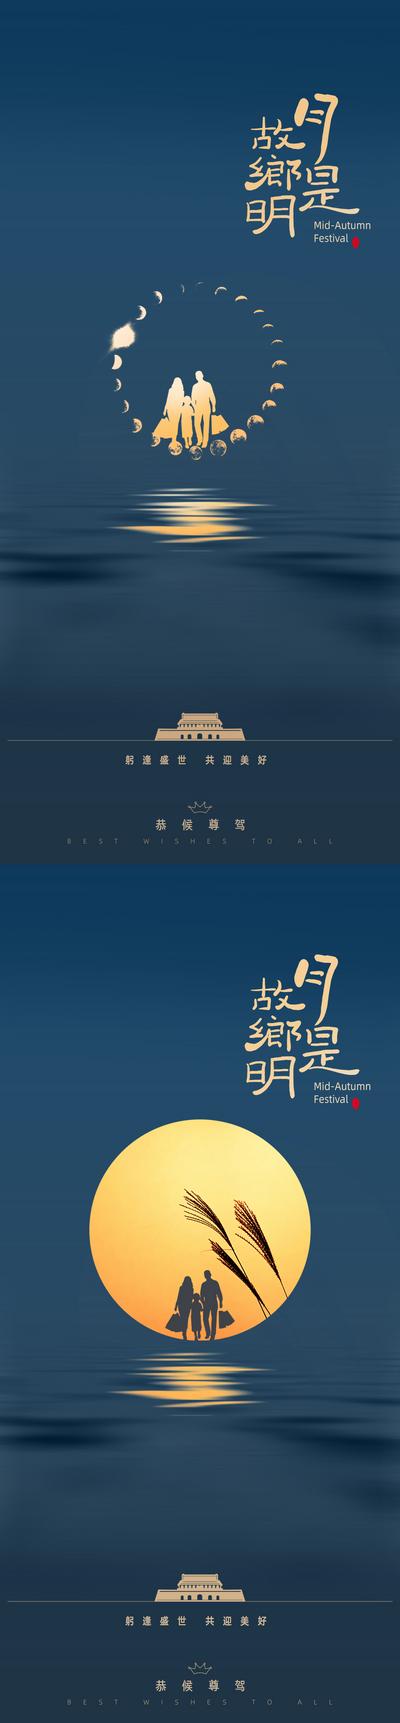 南门网 海报 中国传统节日 中秋 公历节日 国庆 剪影 月亮